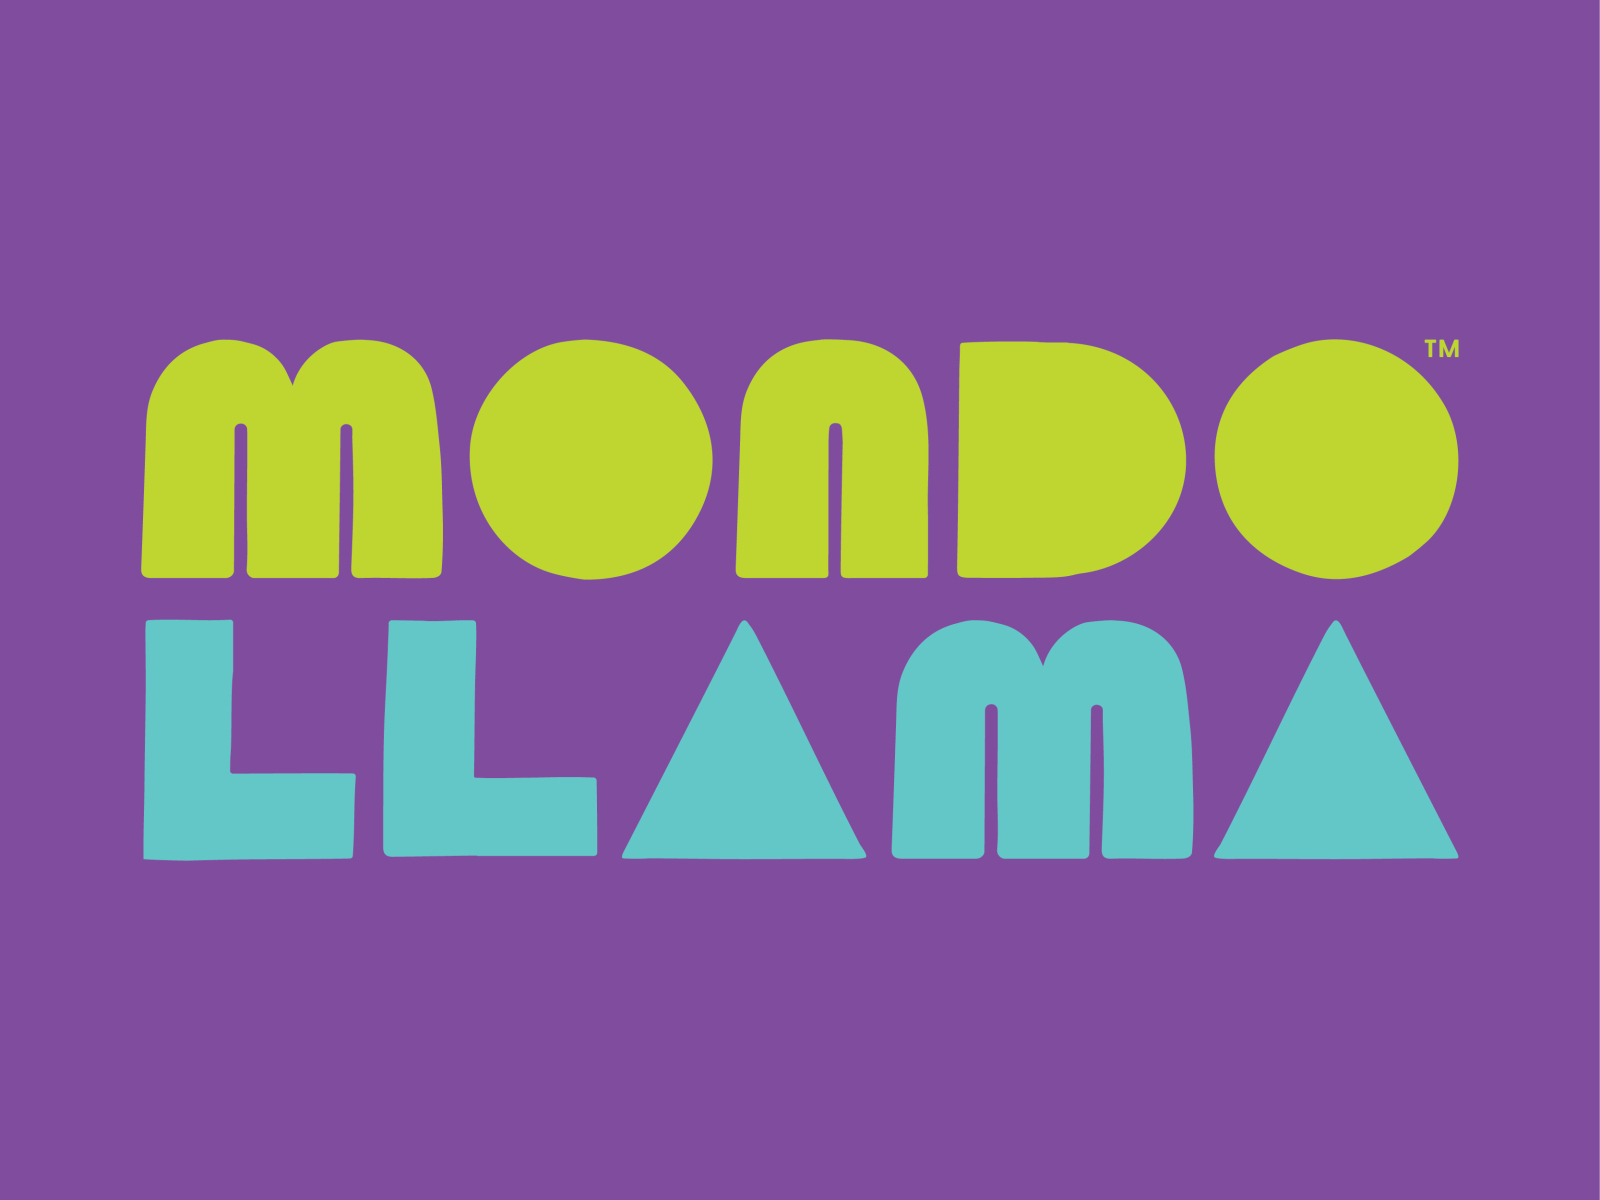 Mondo Llama Logo by Ashley Hohnstein on Dribbble